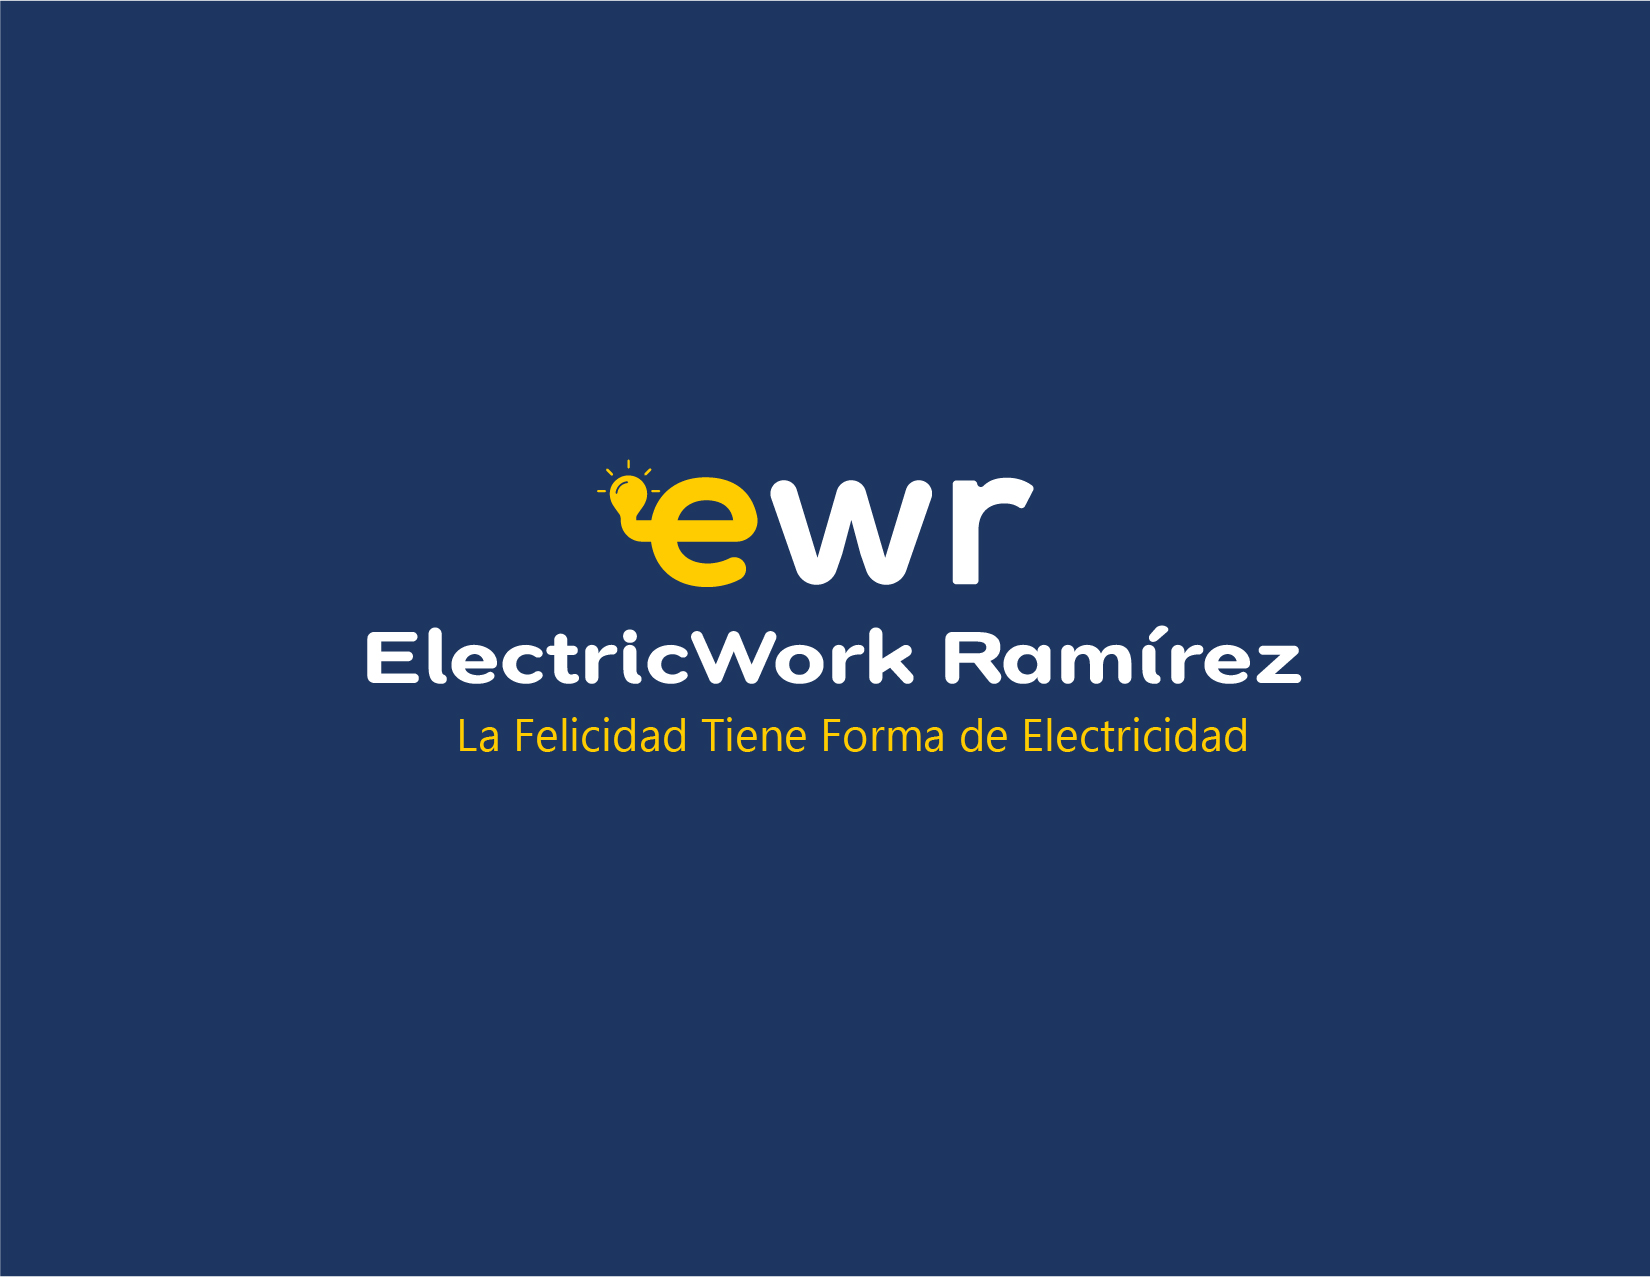 ewr

ElectricWork Ramirez

La Felicidad Tiene Forma de Electricidad - ewr

ElectricWork Ramirez

La Felicidad Tiene Forma de Electricidad - ewr

ElectricWork Ramirez

La Felicidad Tiene Forma de Electricidad